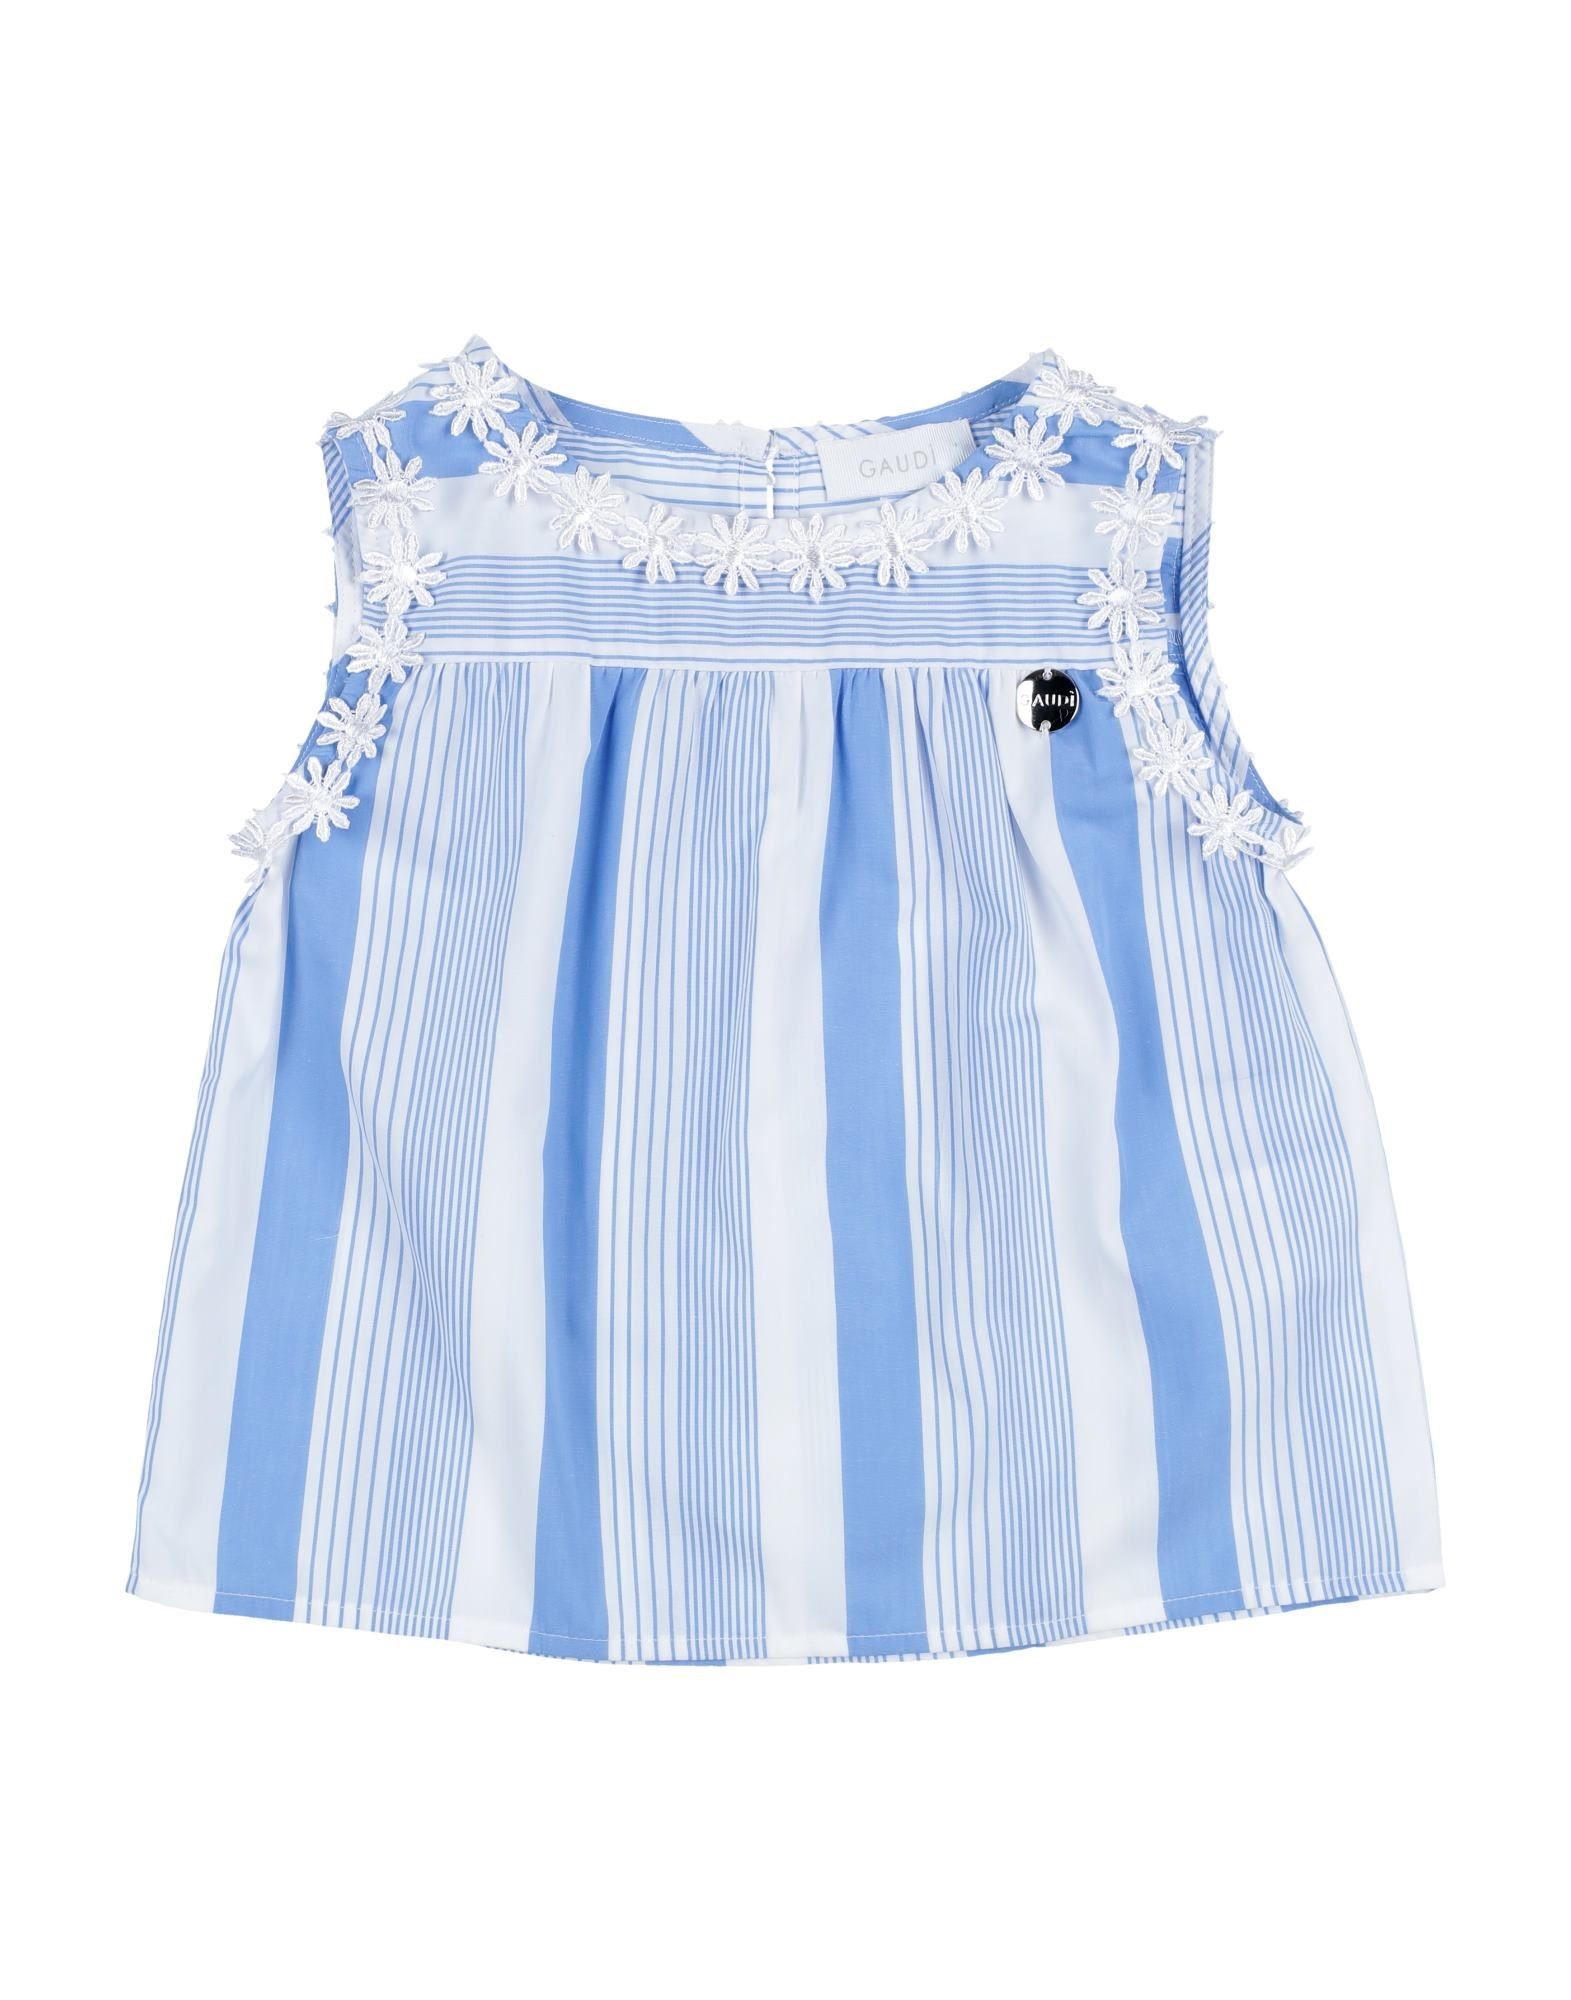 Gaudì Kids'  Toddler Girl Top Sky Blue Size 5 Cotton